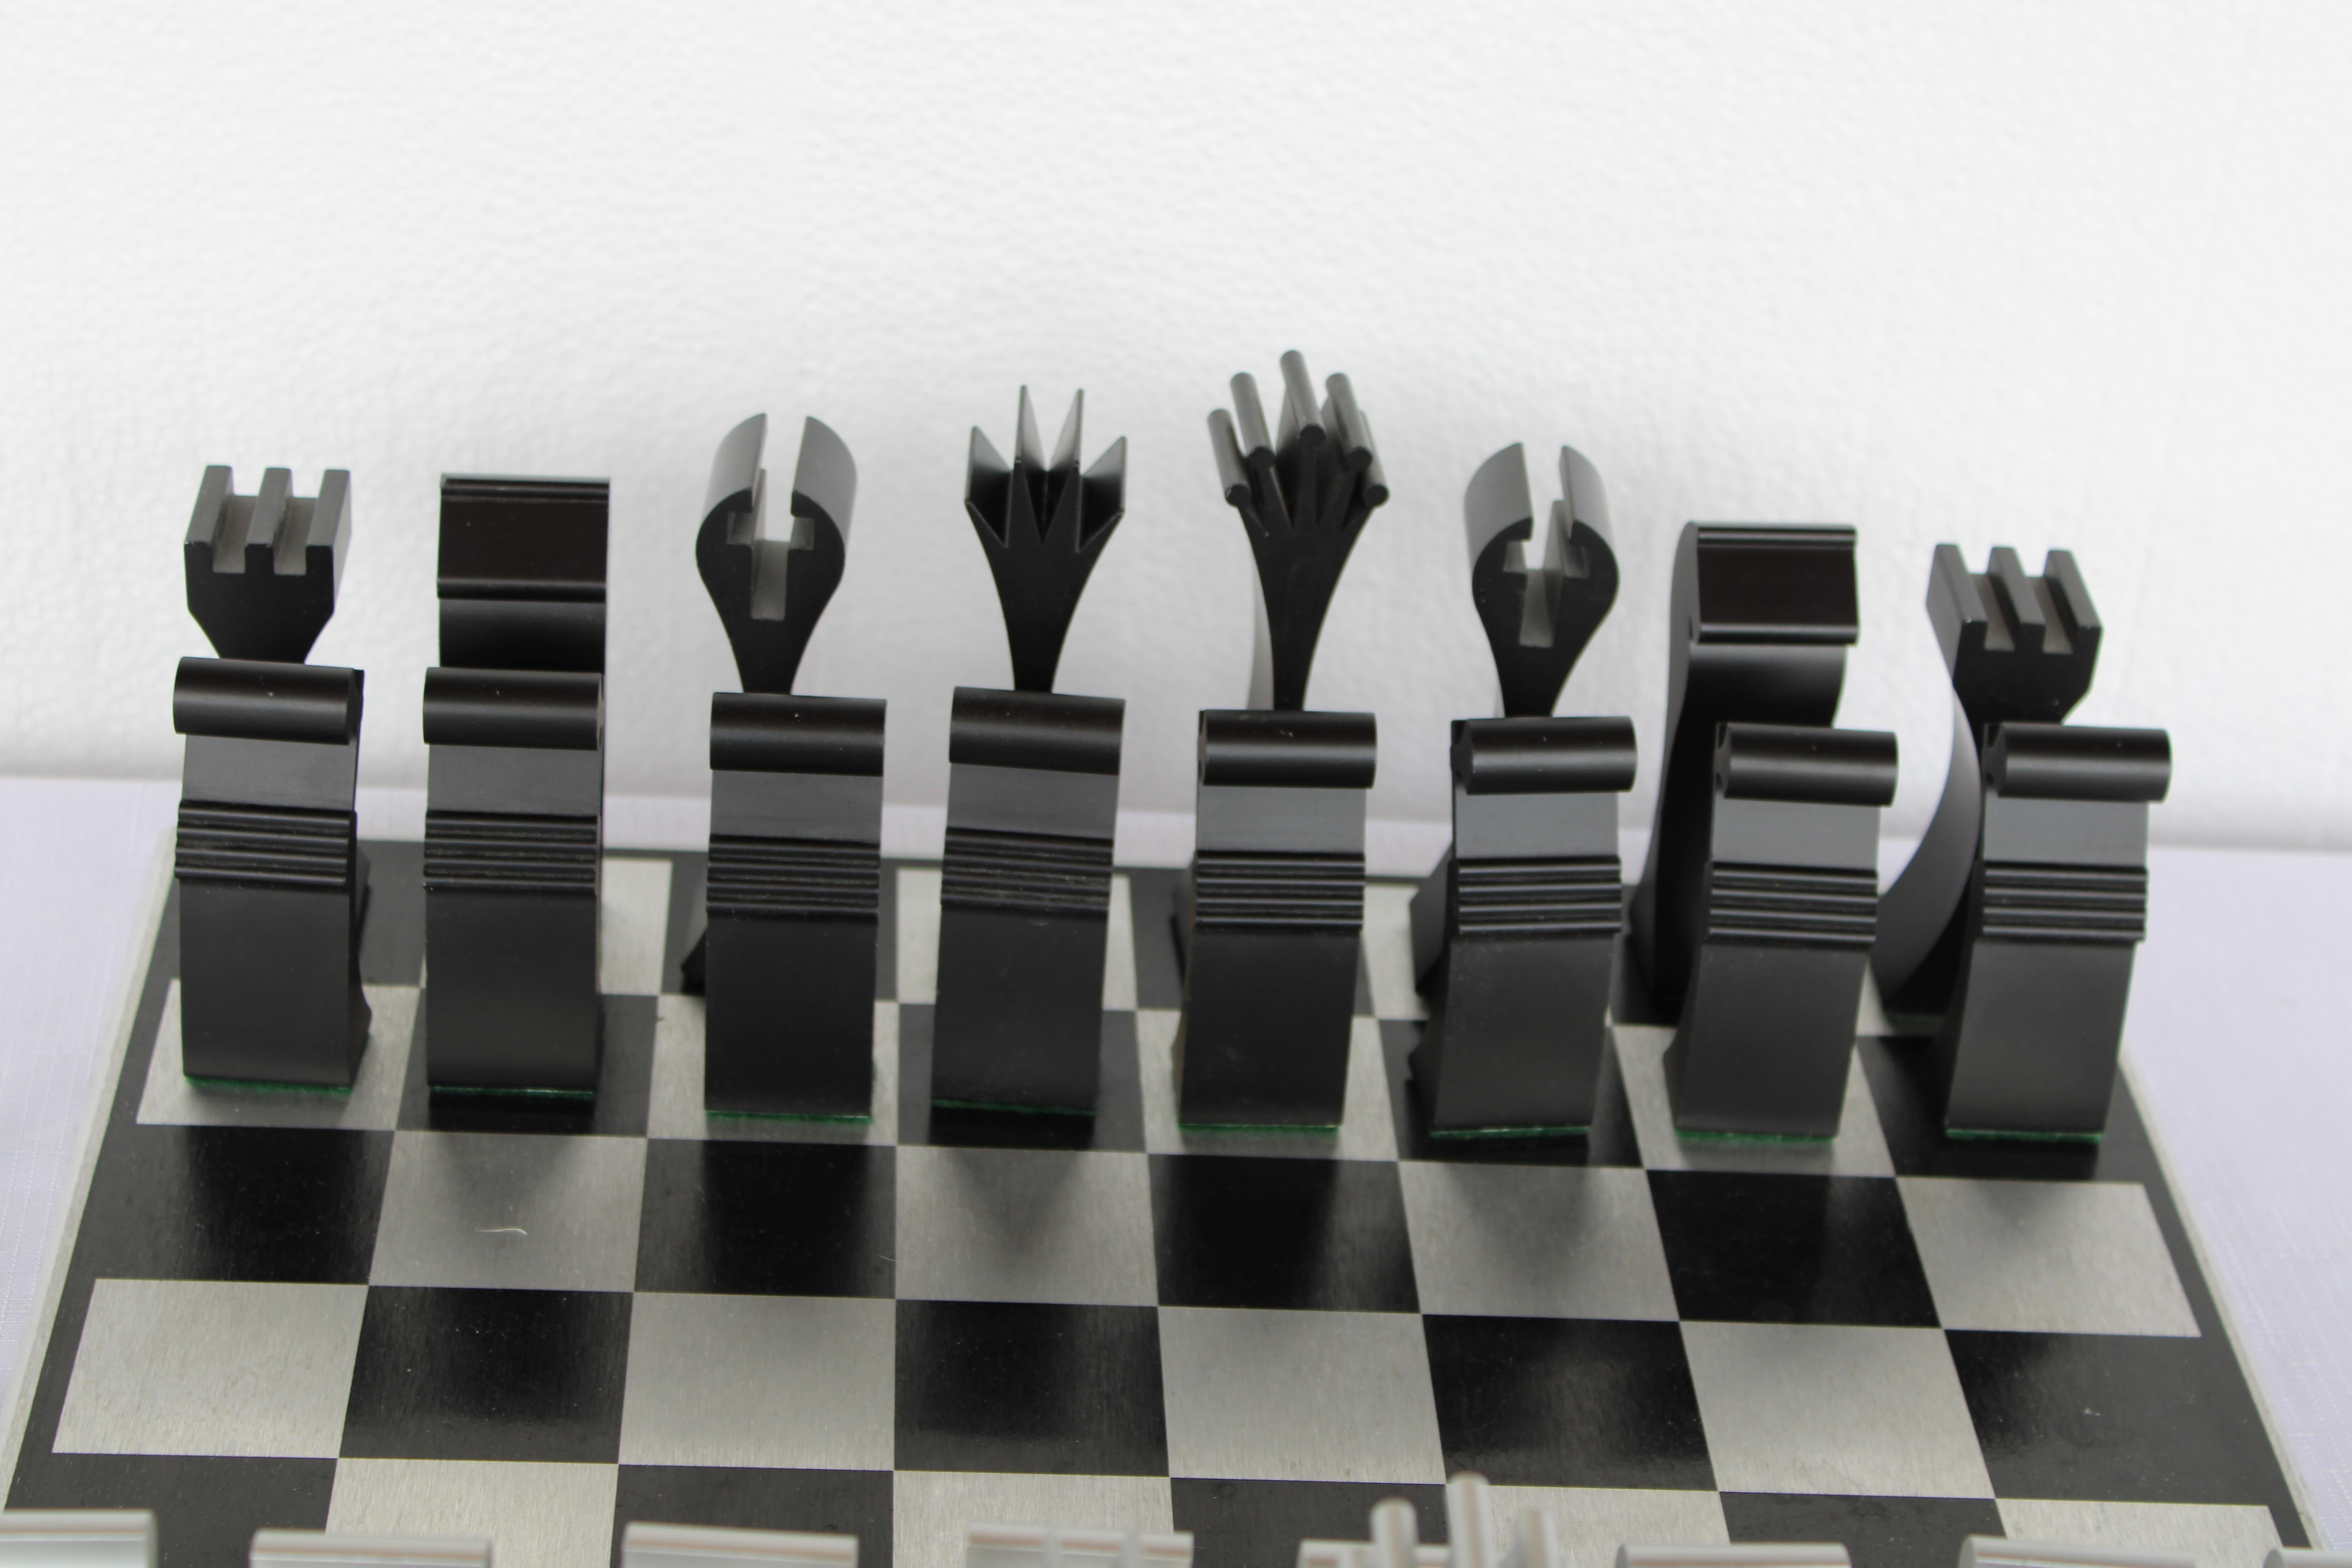 Columbia Aluminiumschachspiel von Scott Wolfe.  Das Schachbrett ist 15,75